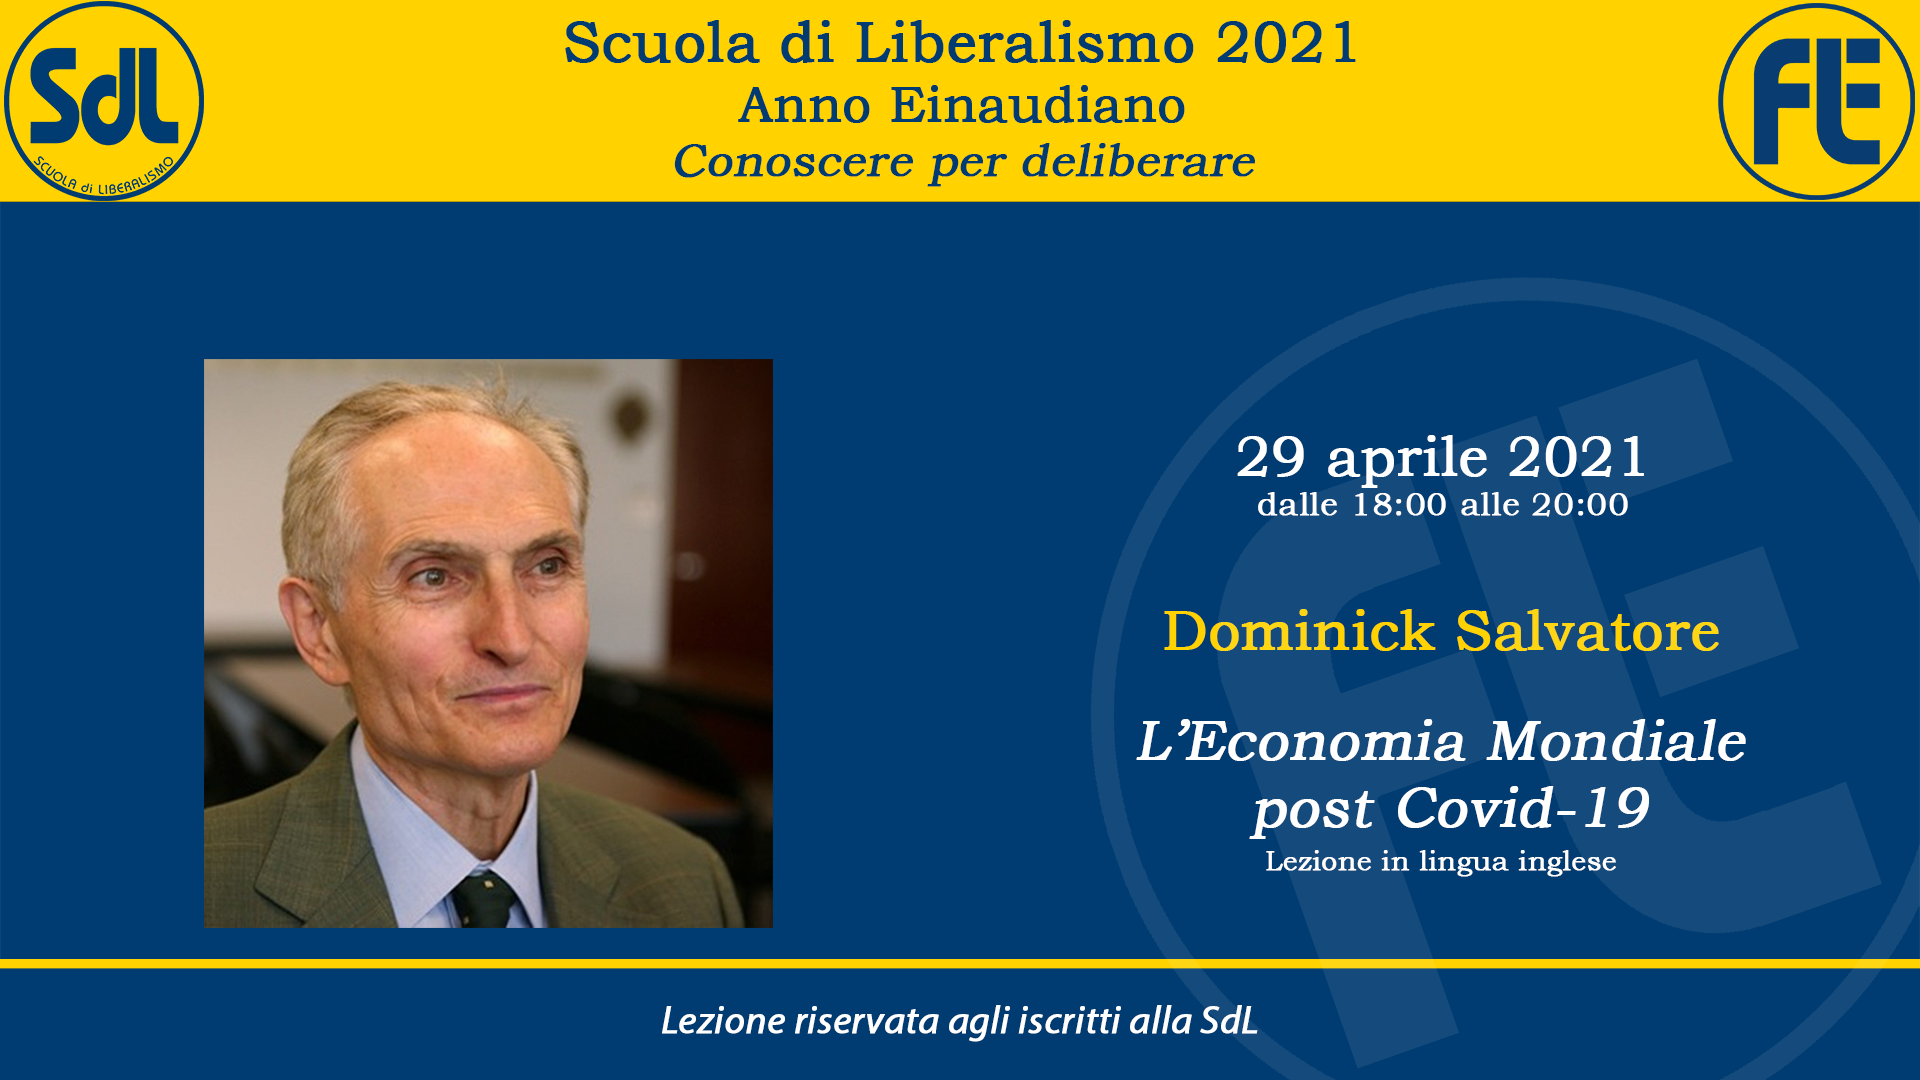 Scuola di Liberalismo 2021 – Dominick Salvatore sul tema “L’Economia Mondiale post Covid-19”